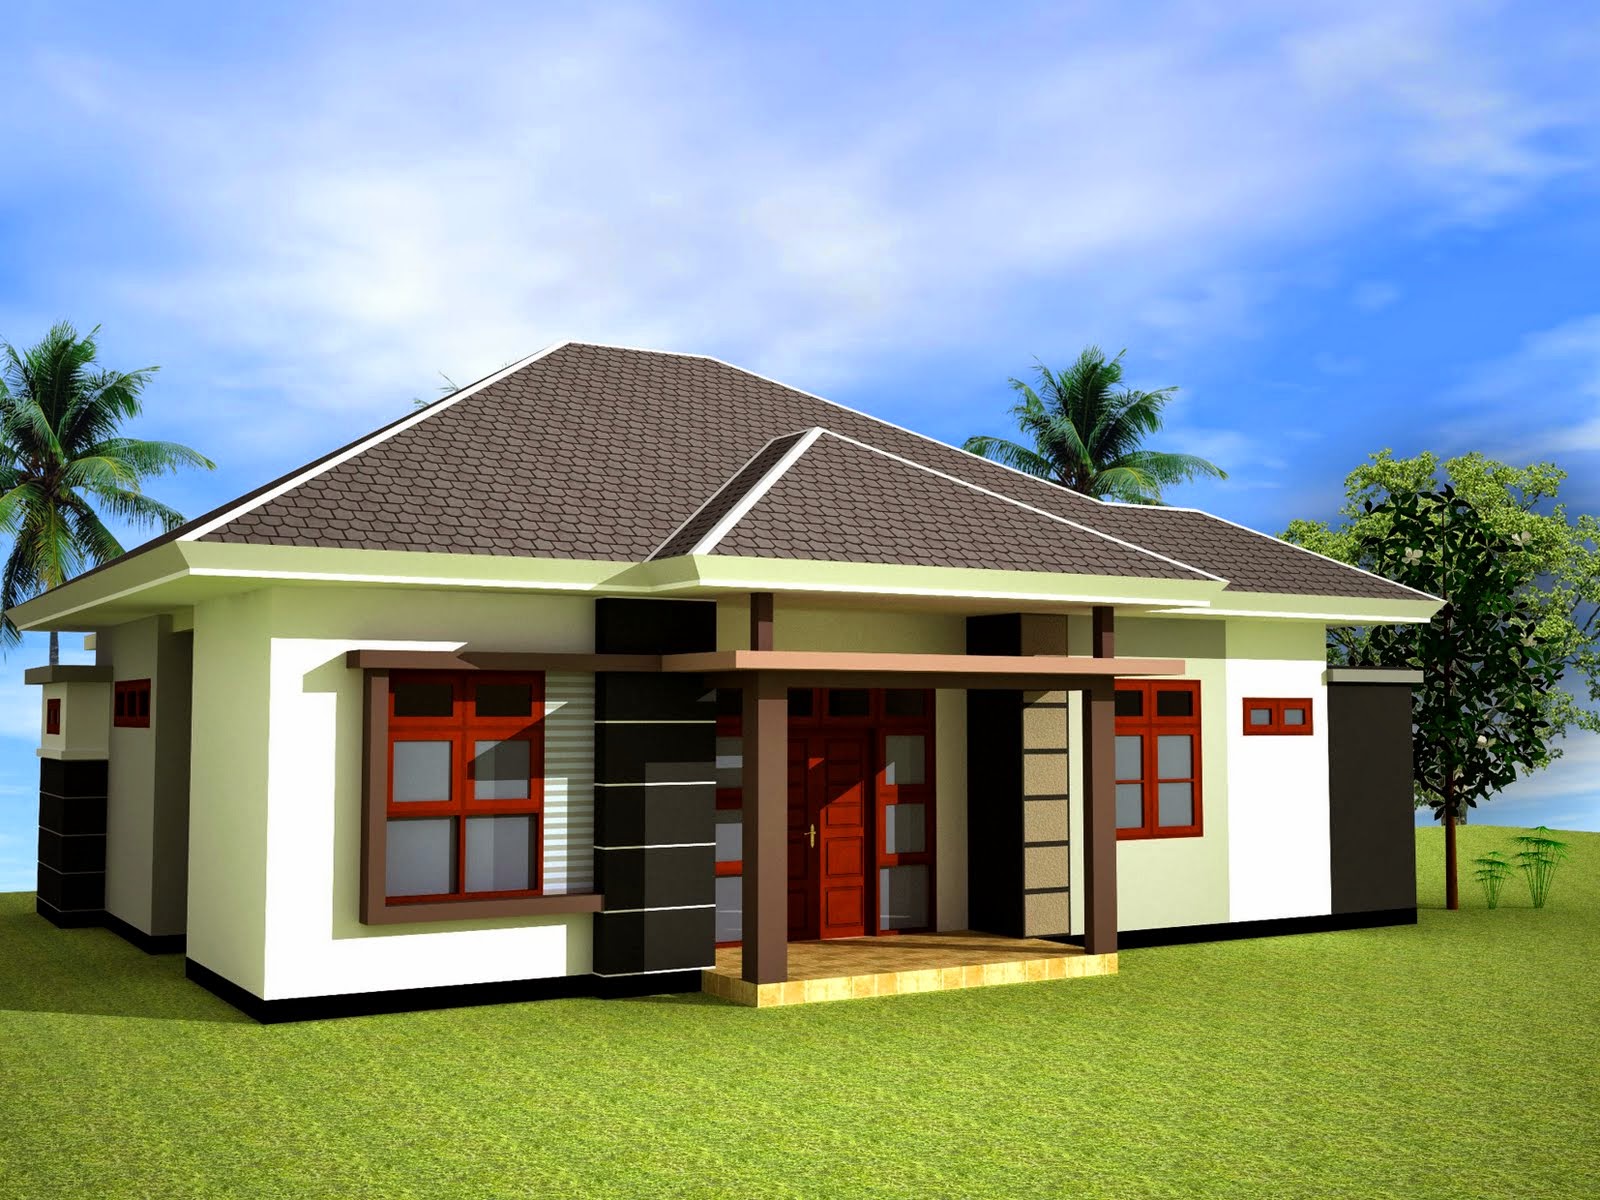 Desain Model Rumah Minimalis Sederhana Terbaru 1 Lantai Arbois Blog